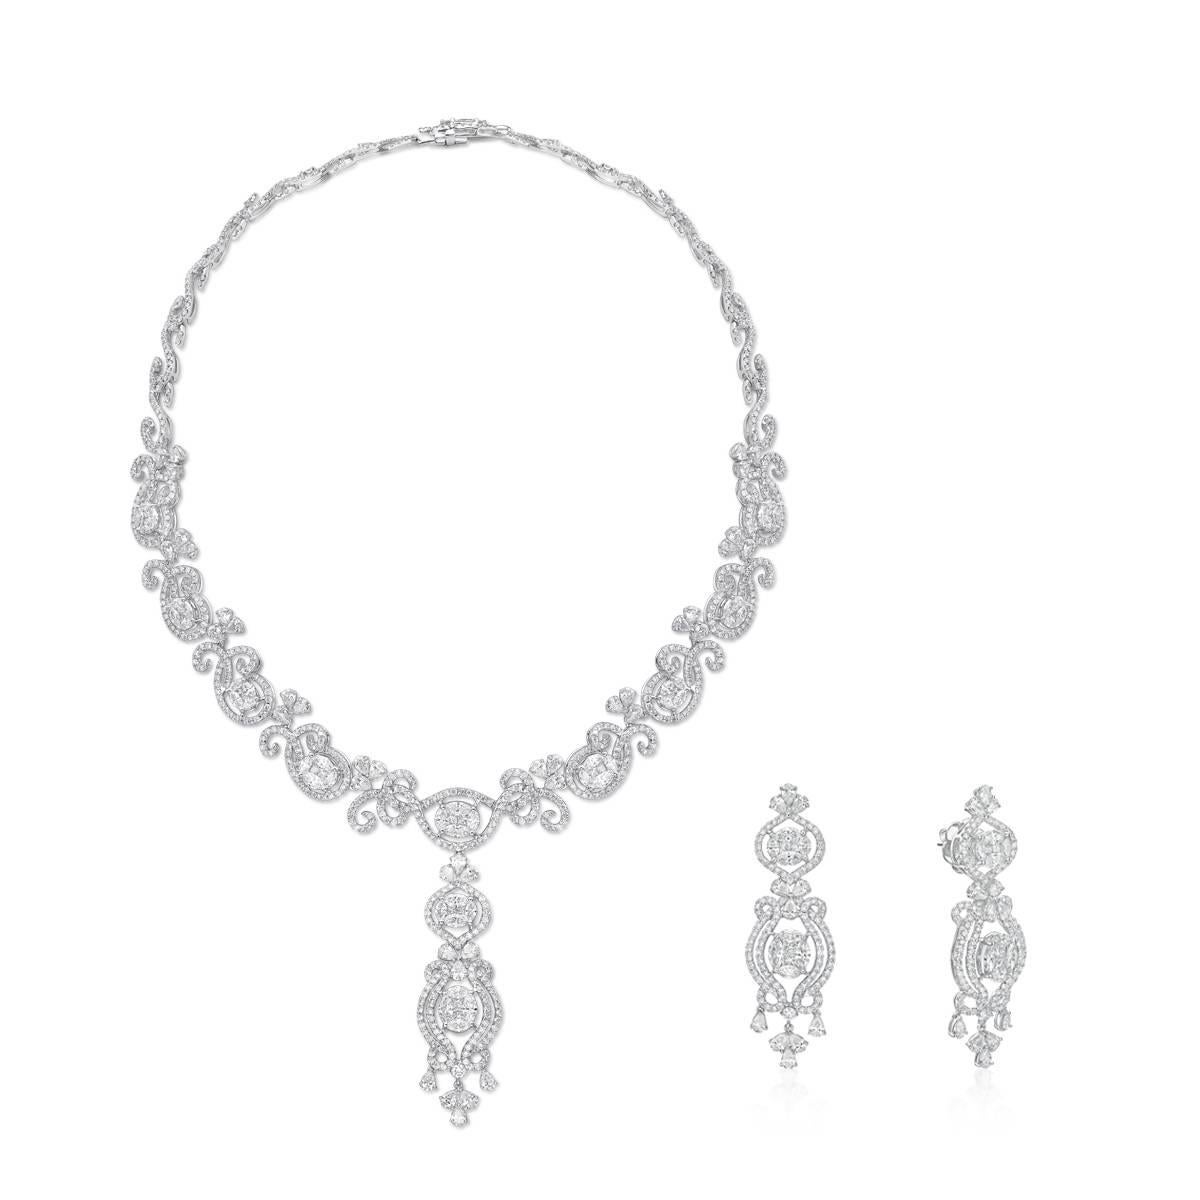 Cette magnifique paire de boucles d'oreilles est idéale pour les occasions spéciales ou les fêtes formelles.

Les détails du diamant :
242 Diamants - 7,52 carats
or blanc 18K

*Le collier assorti est vendu séparément.